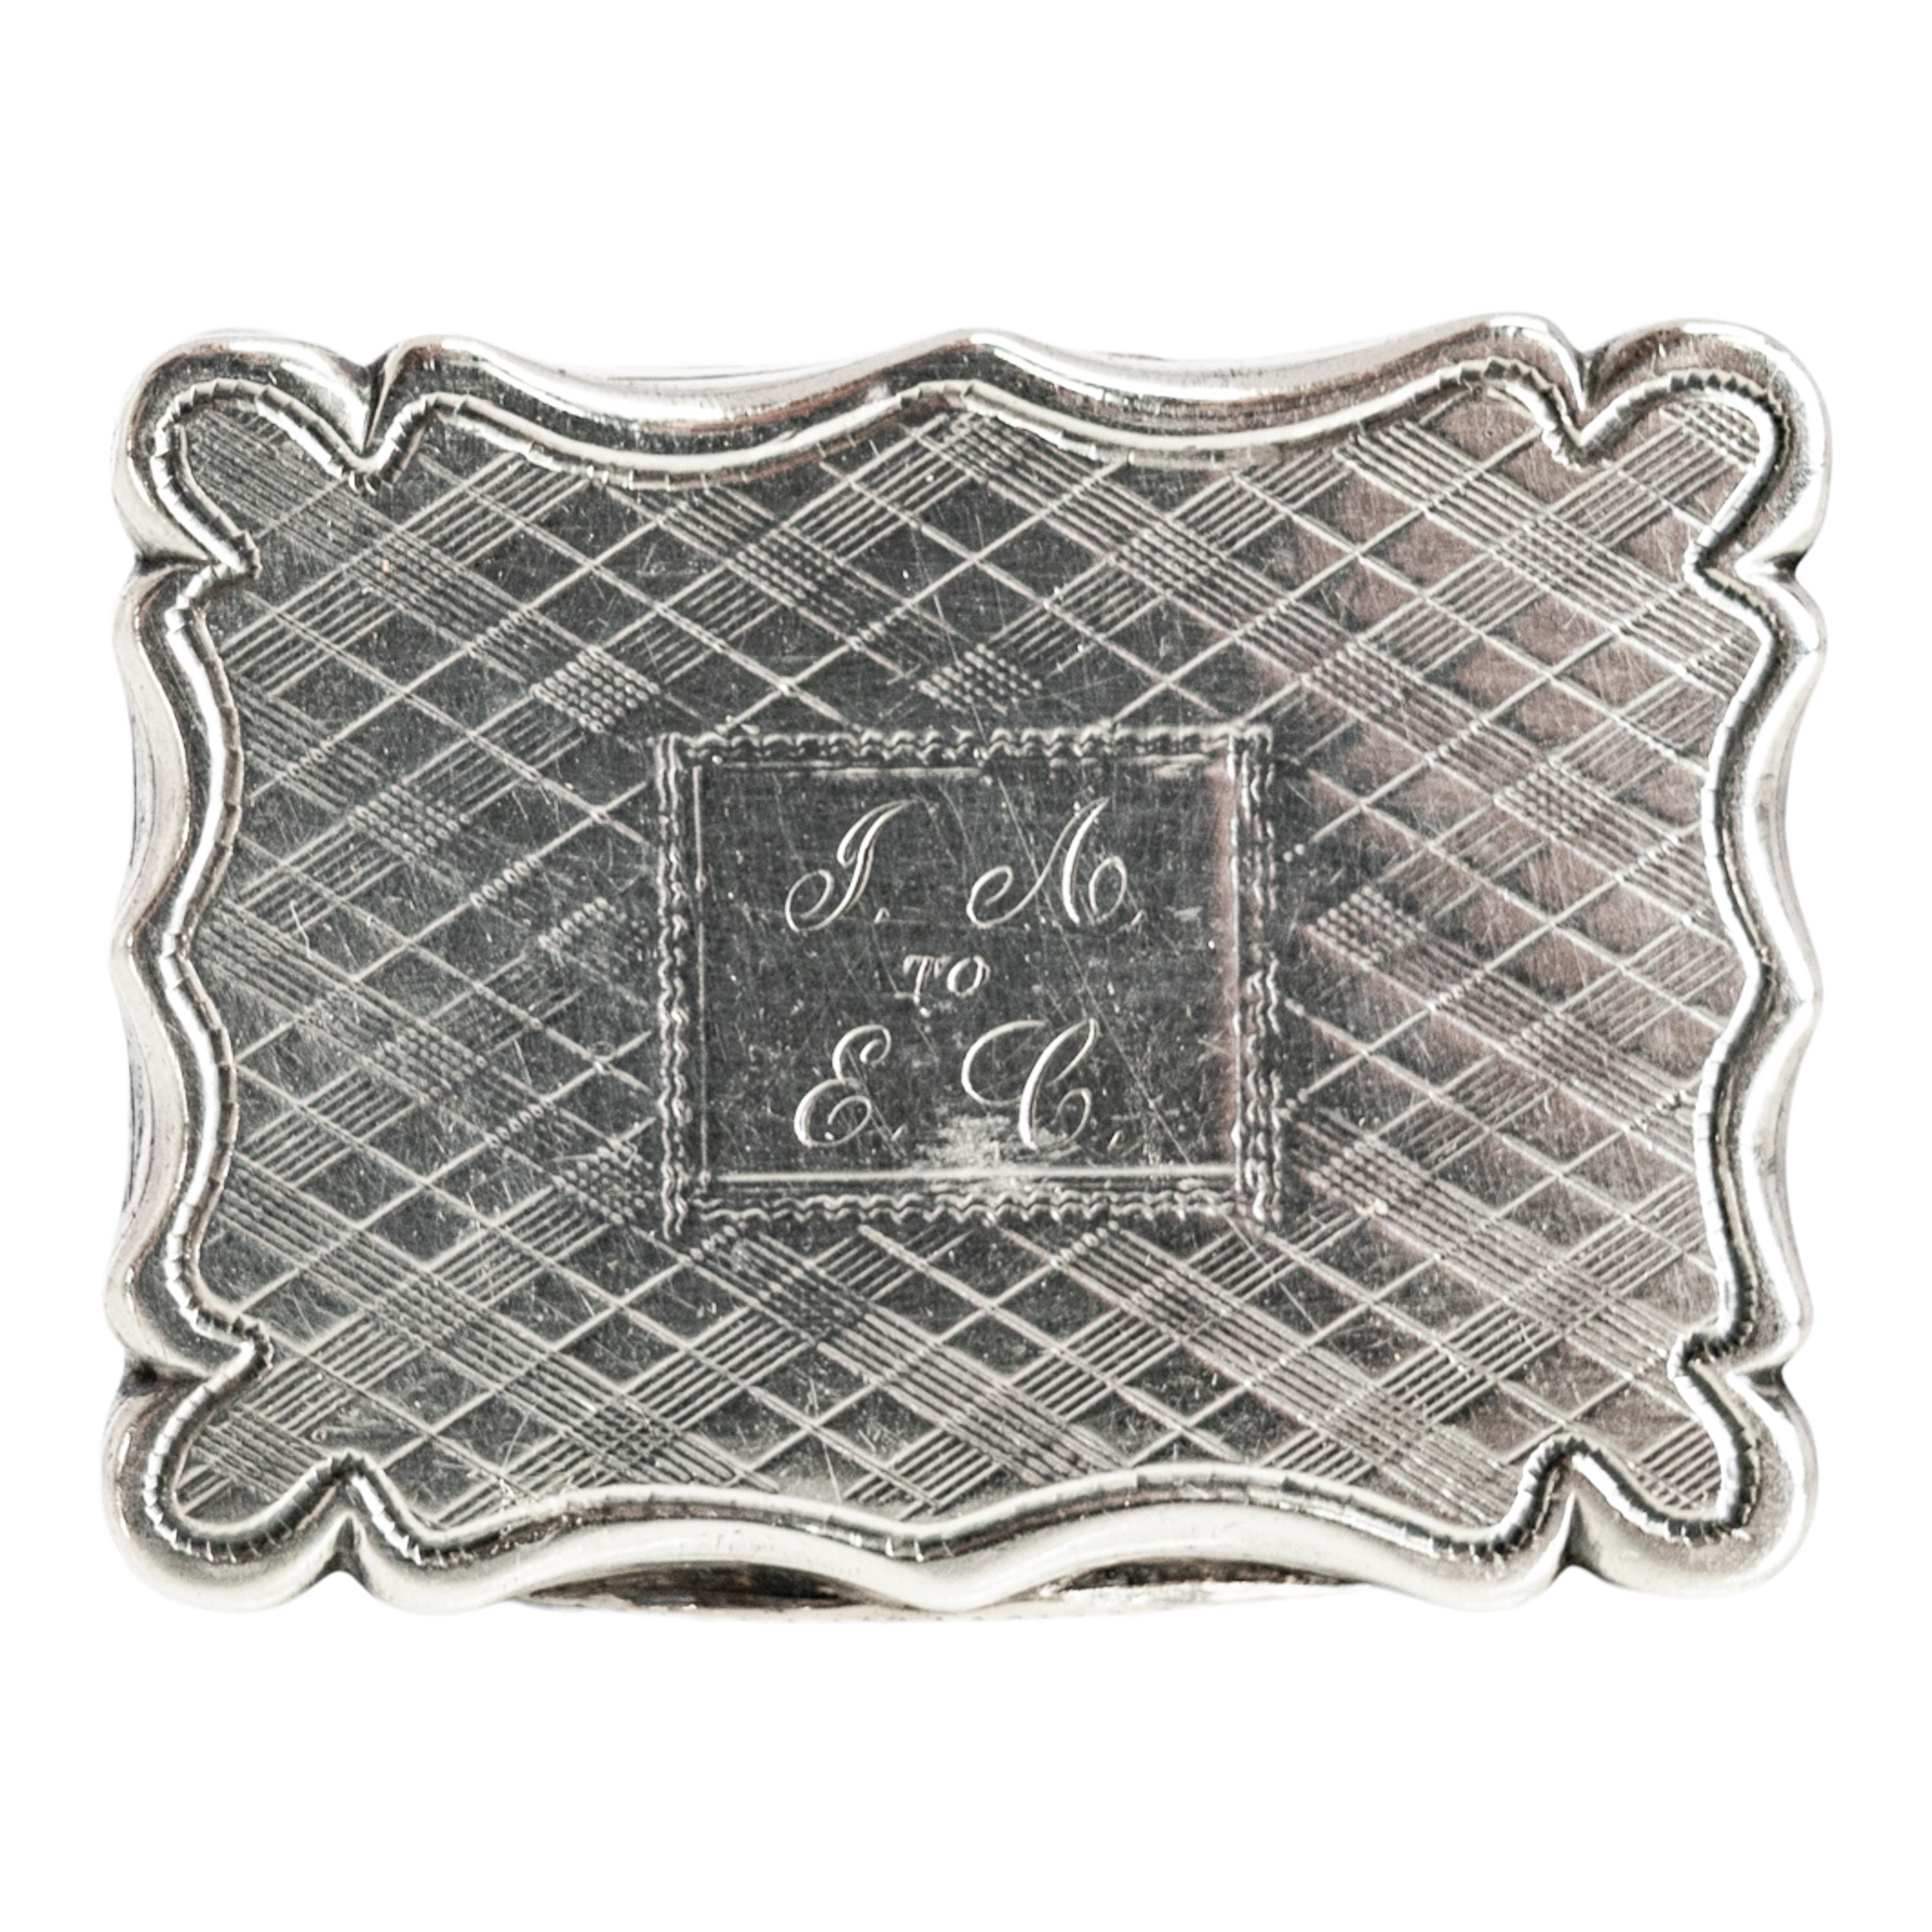 Vinaigrette en argent sterling gravé, Edward Smith, Birmingham, 1839.
La vinaigrette est finement guillochée sur le dessus à charnière et le dessous, le couvercle est monogrammé et gravé de 